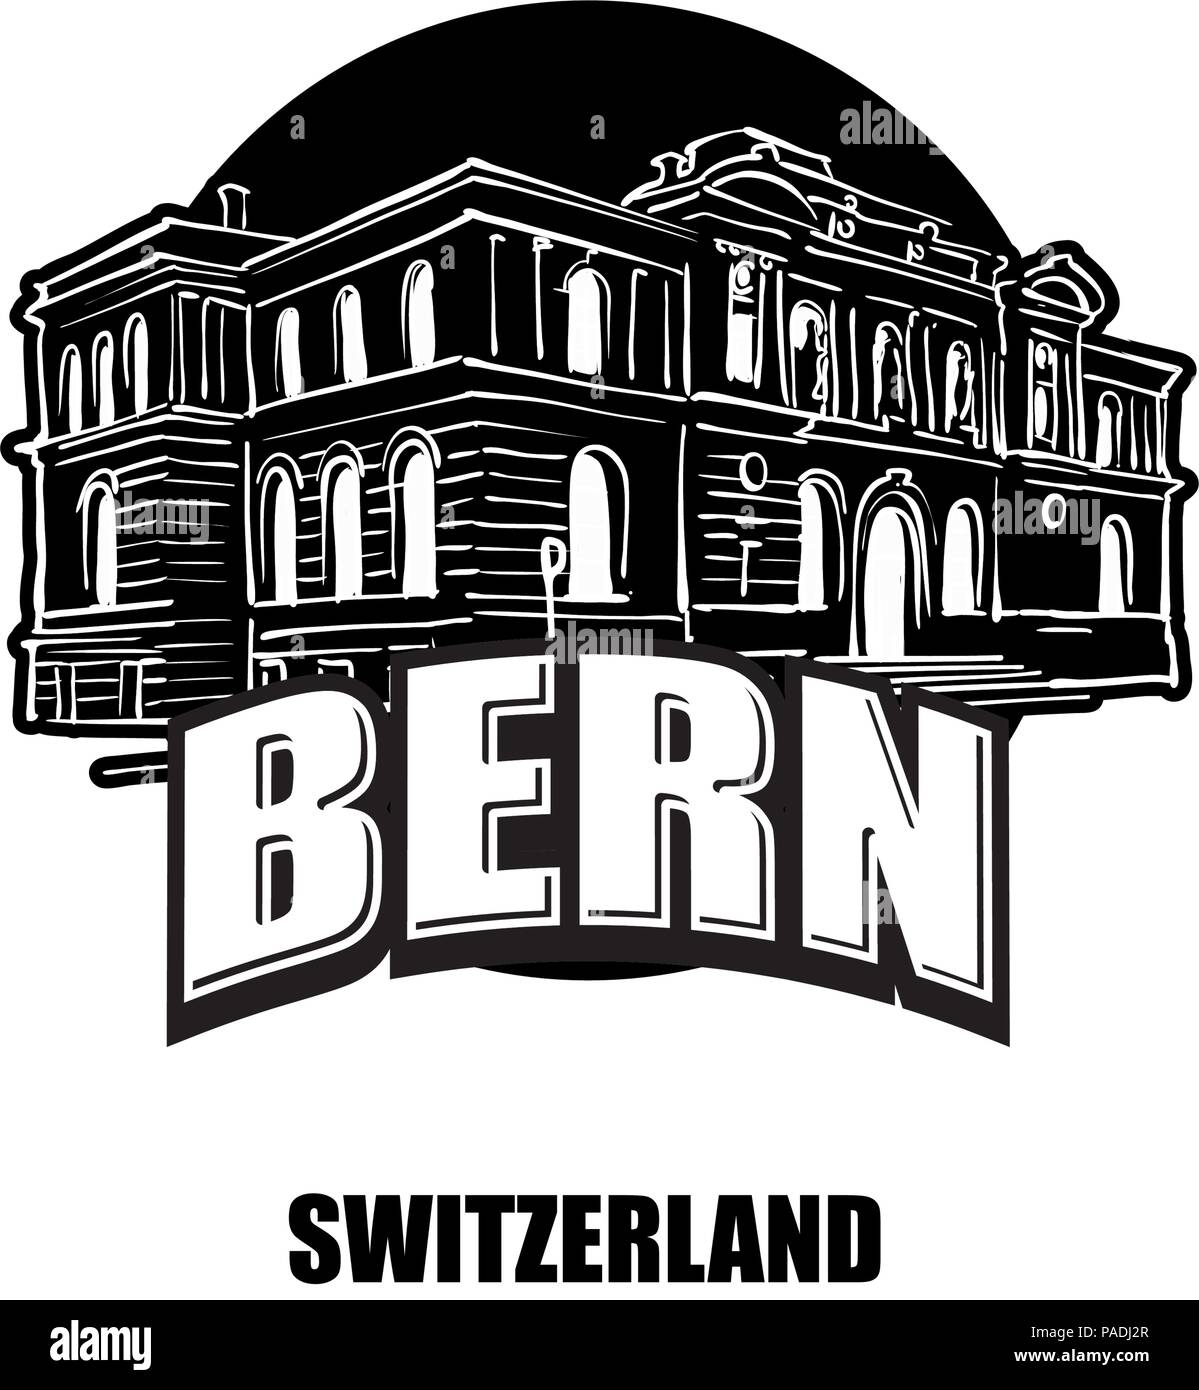 Berne, Suisse, logo noir et blanc pour des impressions de haute qualité. Croquis vecteur dessiné à la main. Illustration de Vecteur